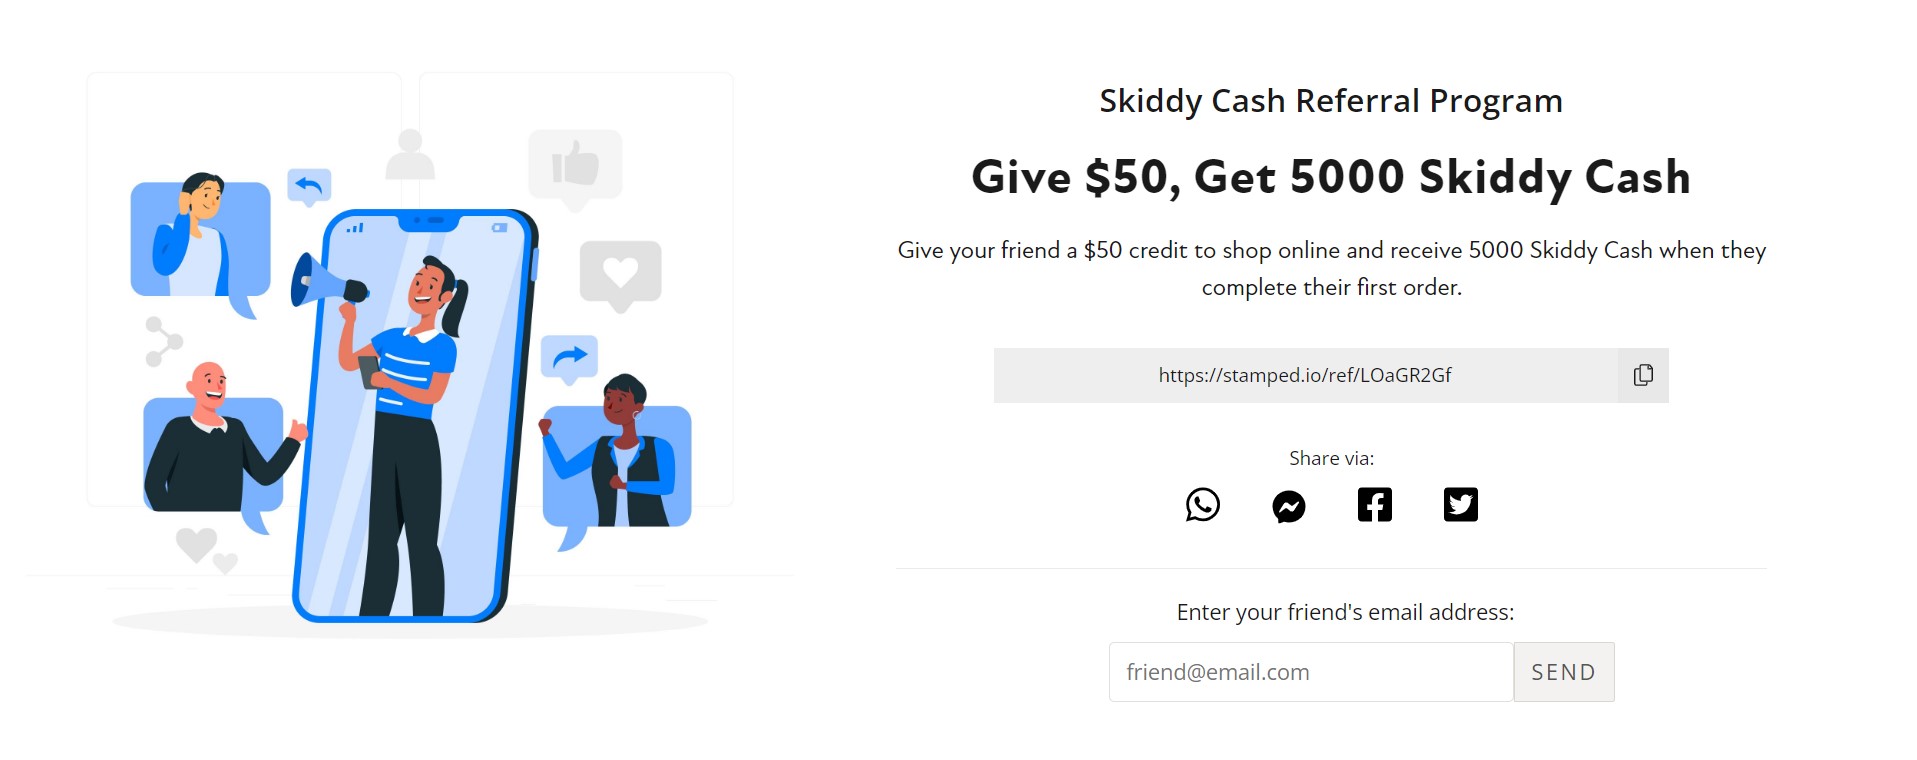 Skiddy Cash Referral Program